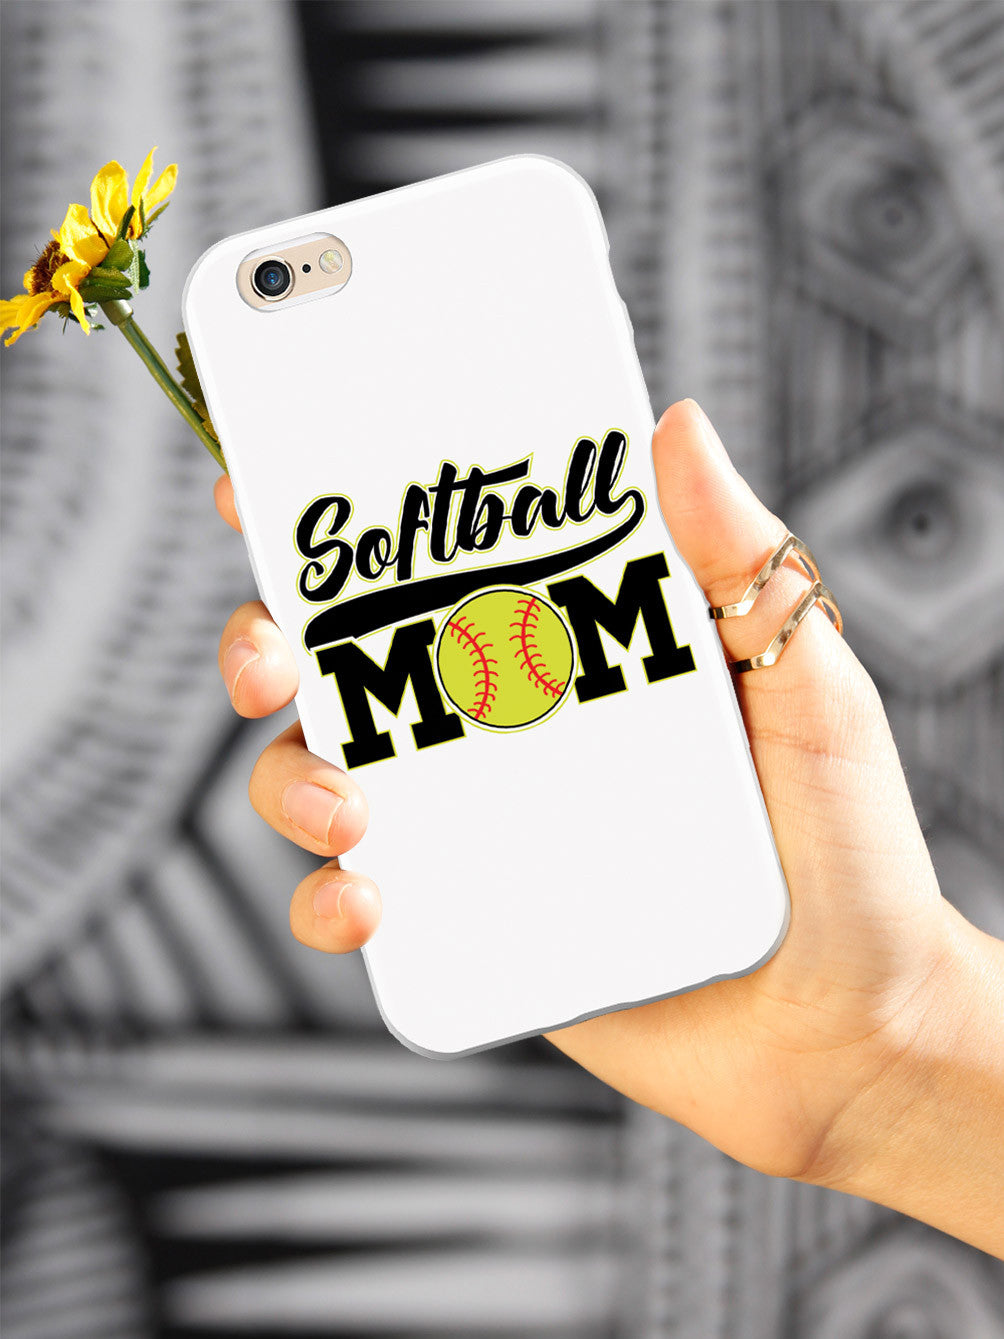 Softball Mom - White Case